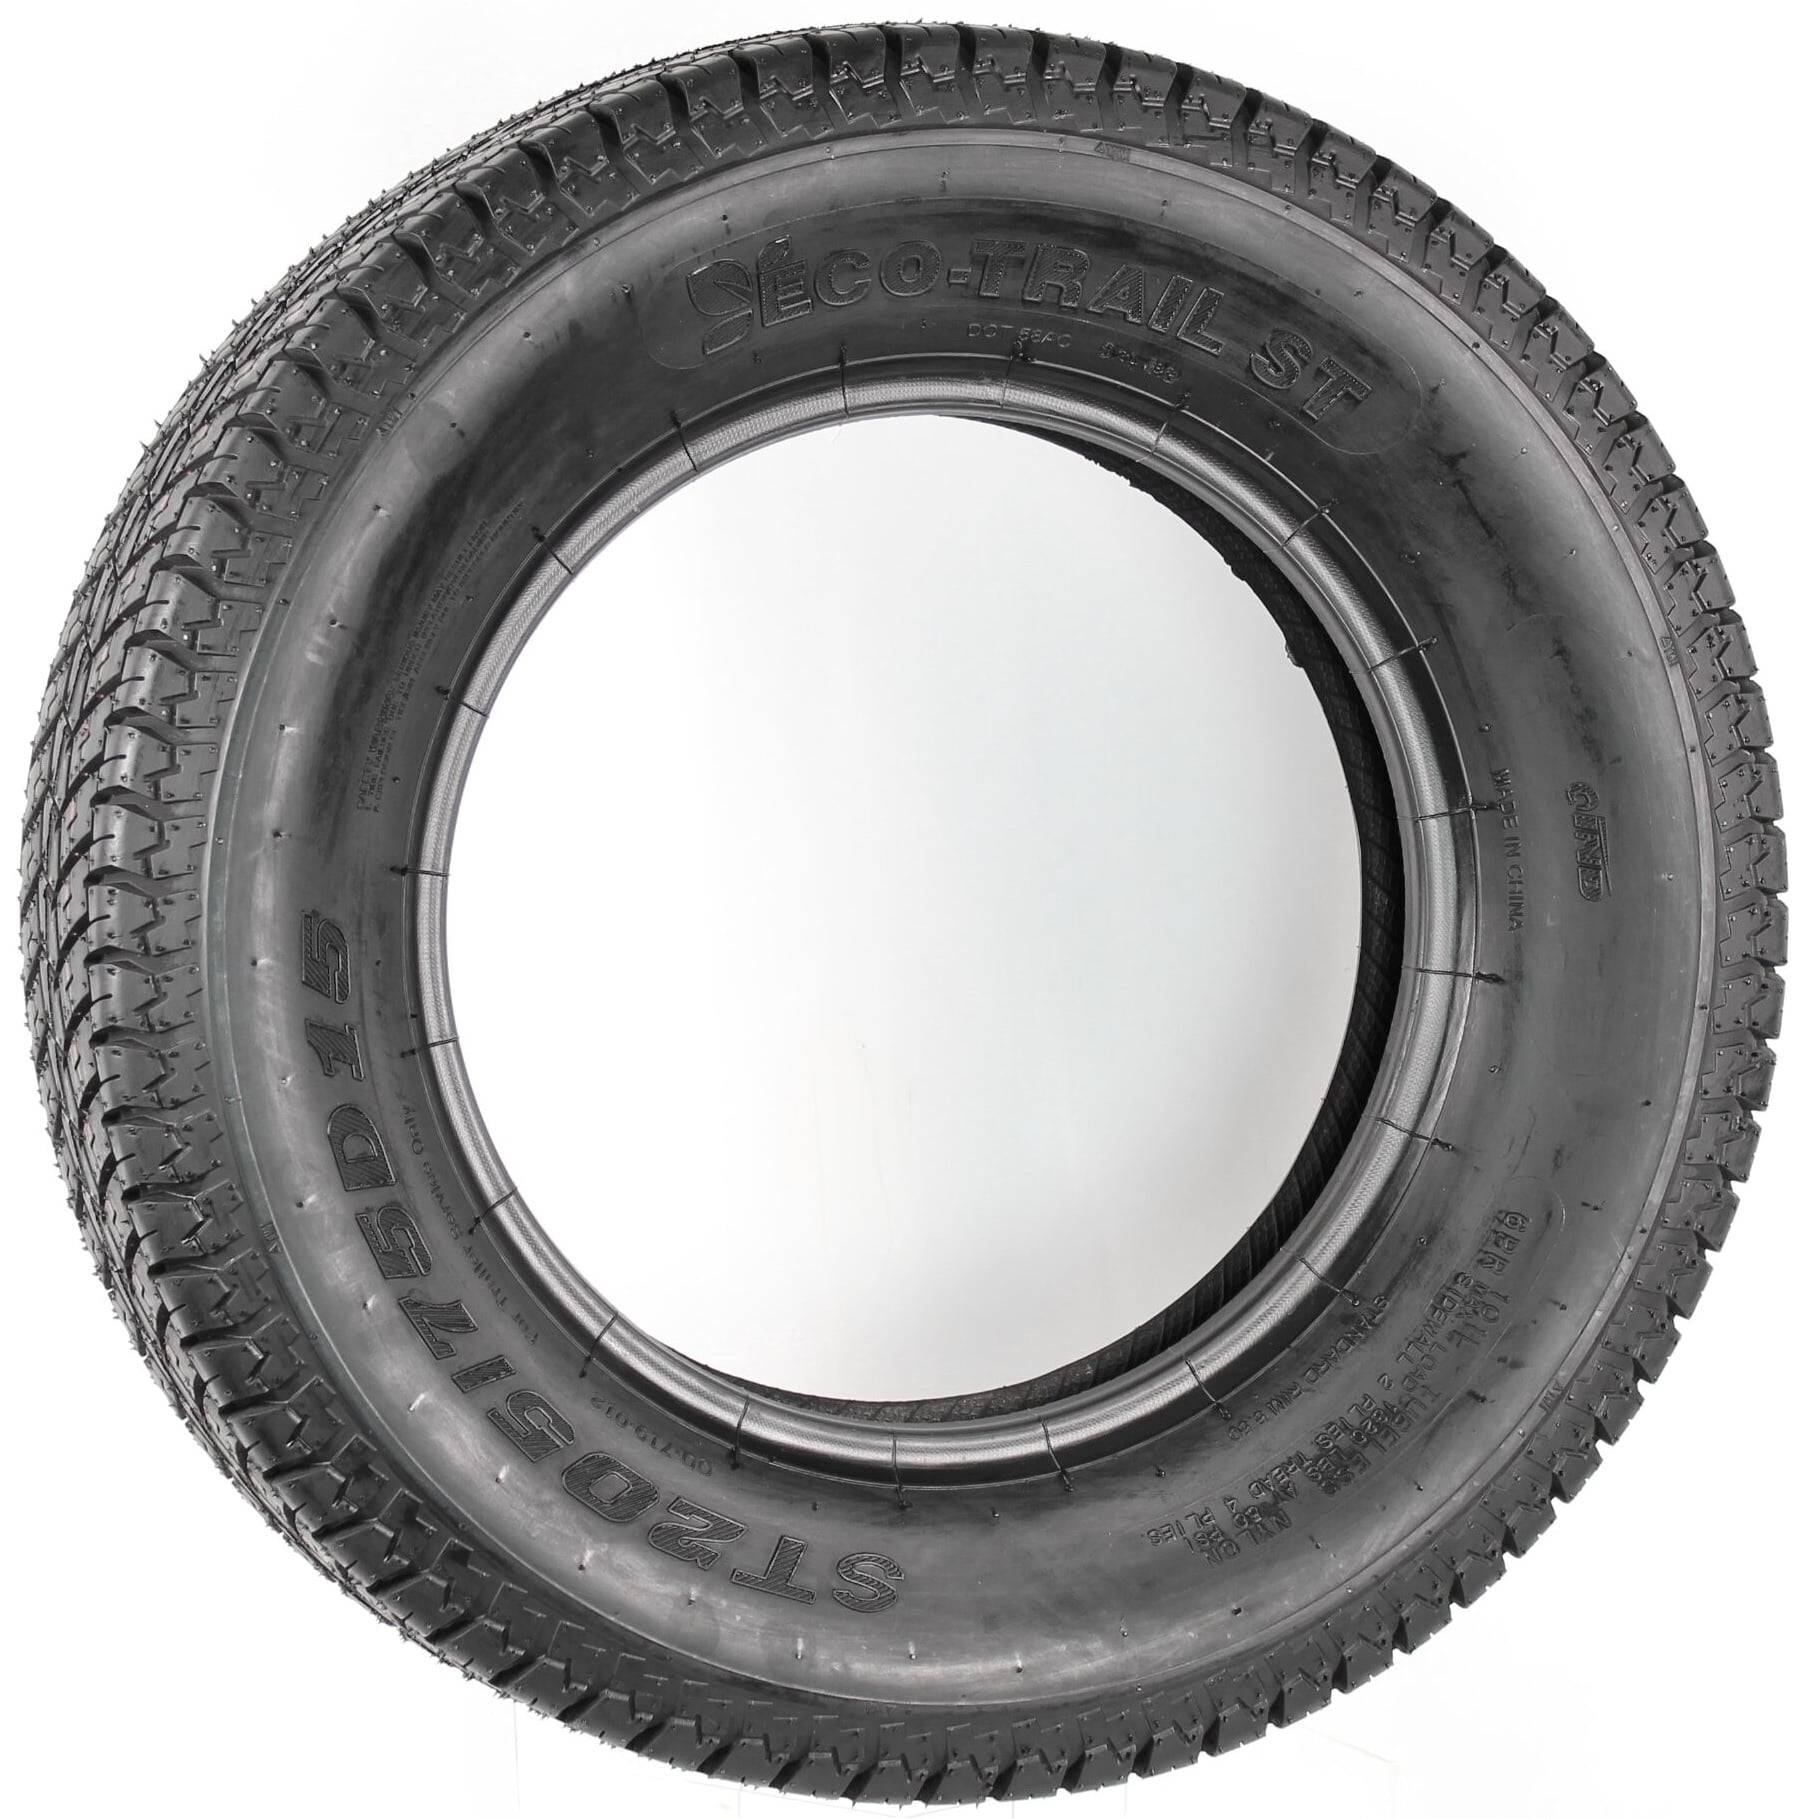 Kenda Loadstar ST225/75D15 Load Range C Bias Ply Trailer Tire 